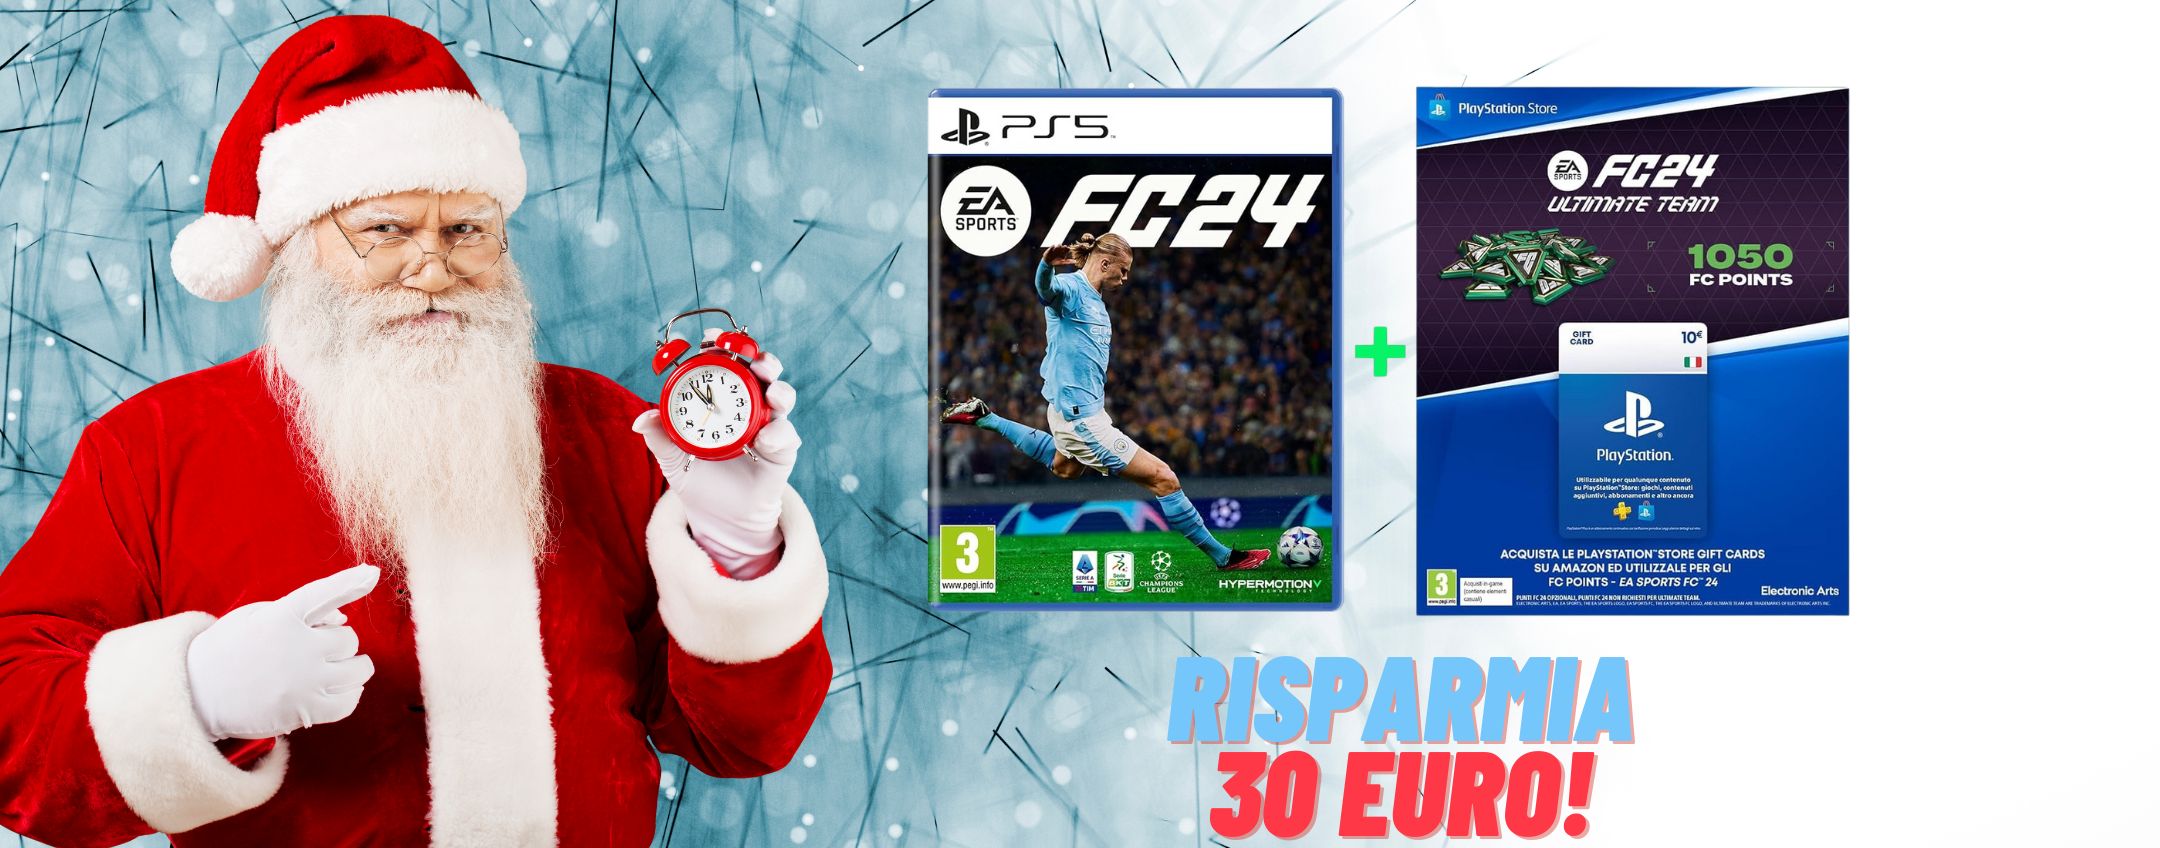 Ultima possibilità per regalare FC24 per PS5 + 10€ di buono regalo  risparmiando 30€ - Melablog